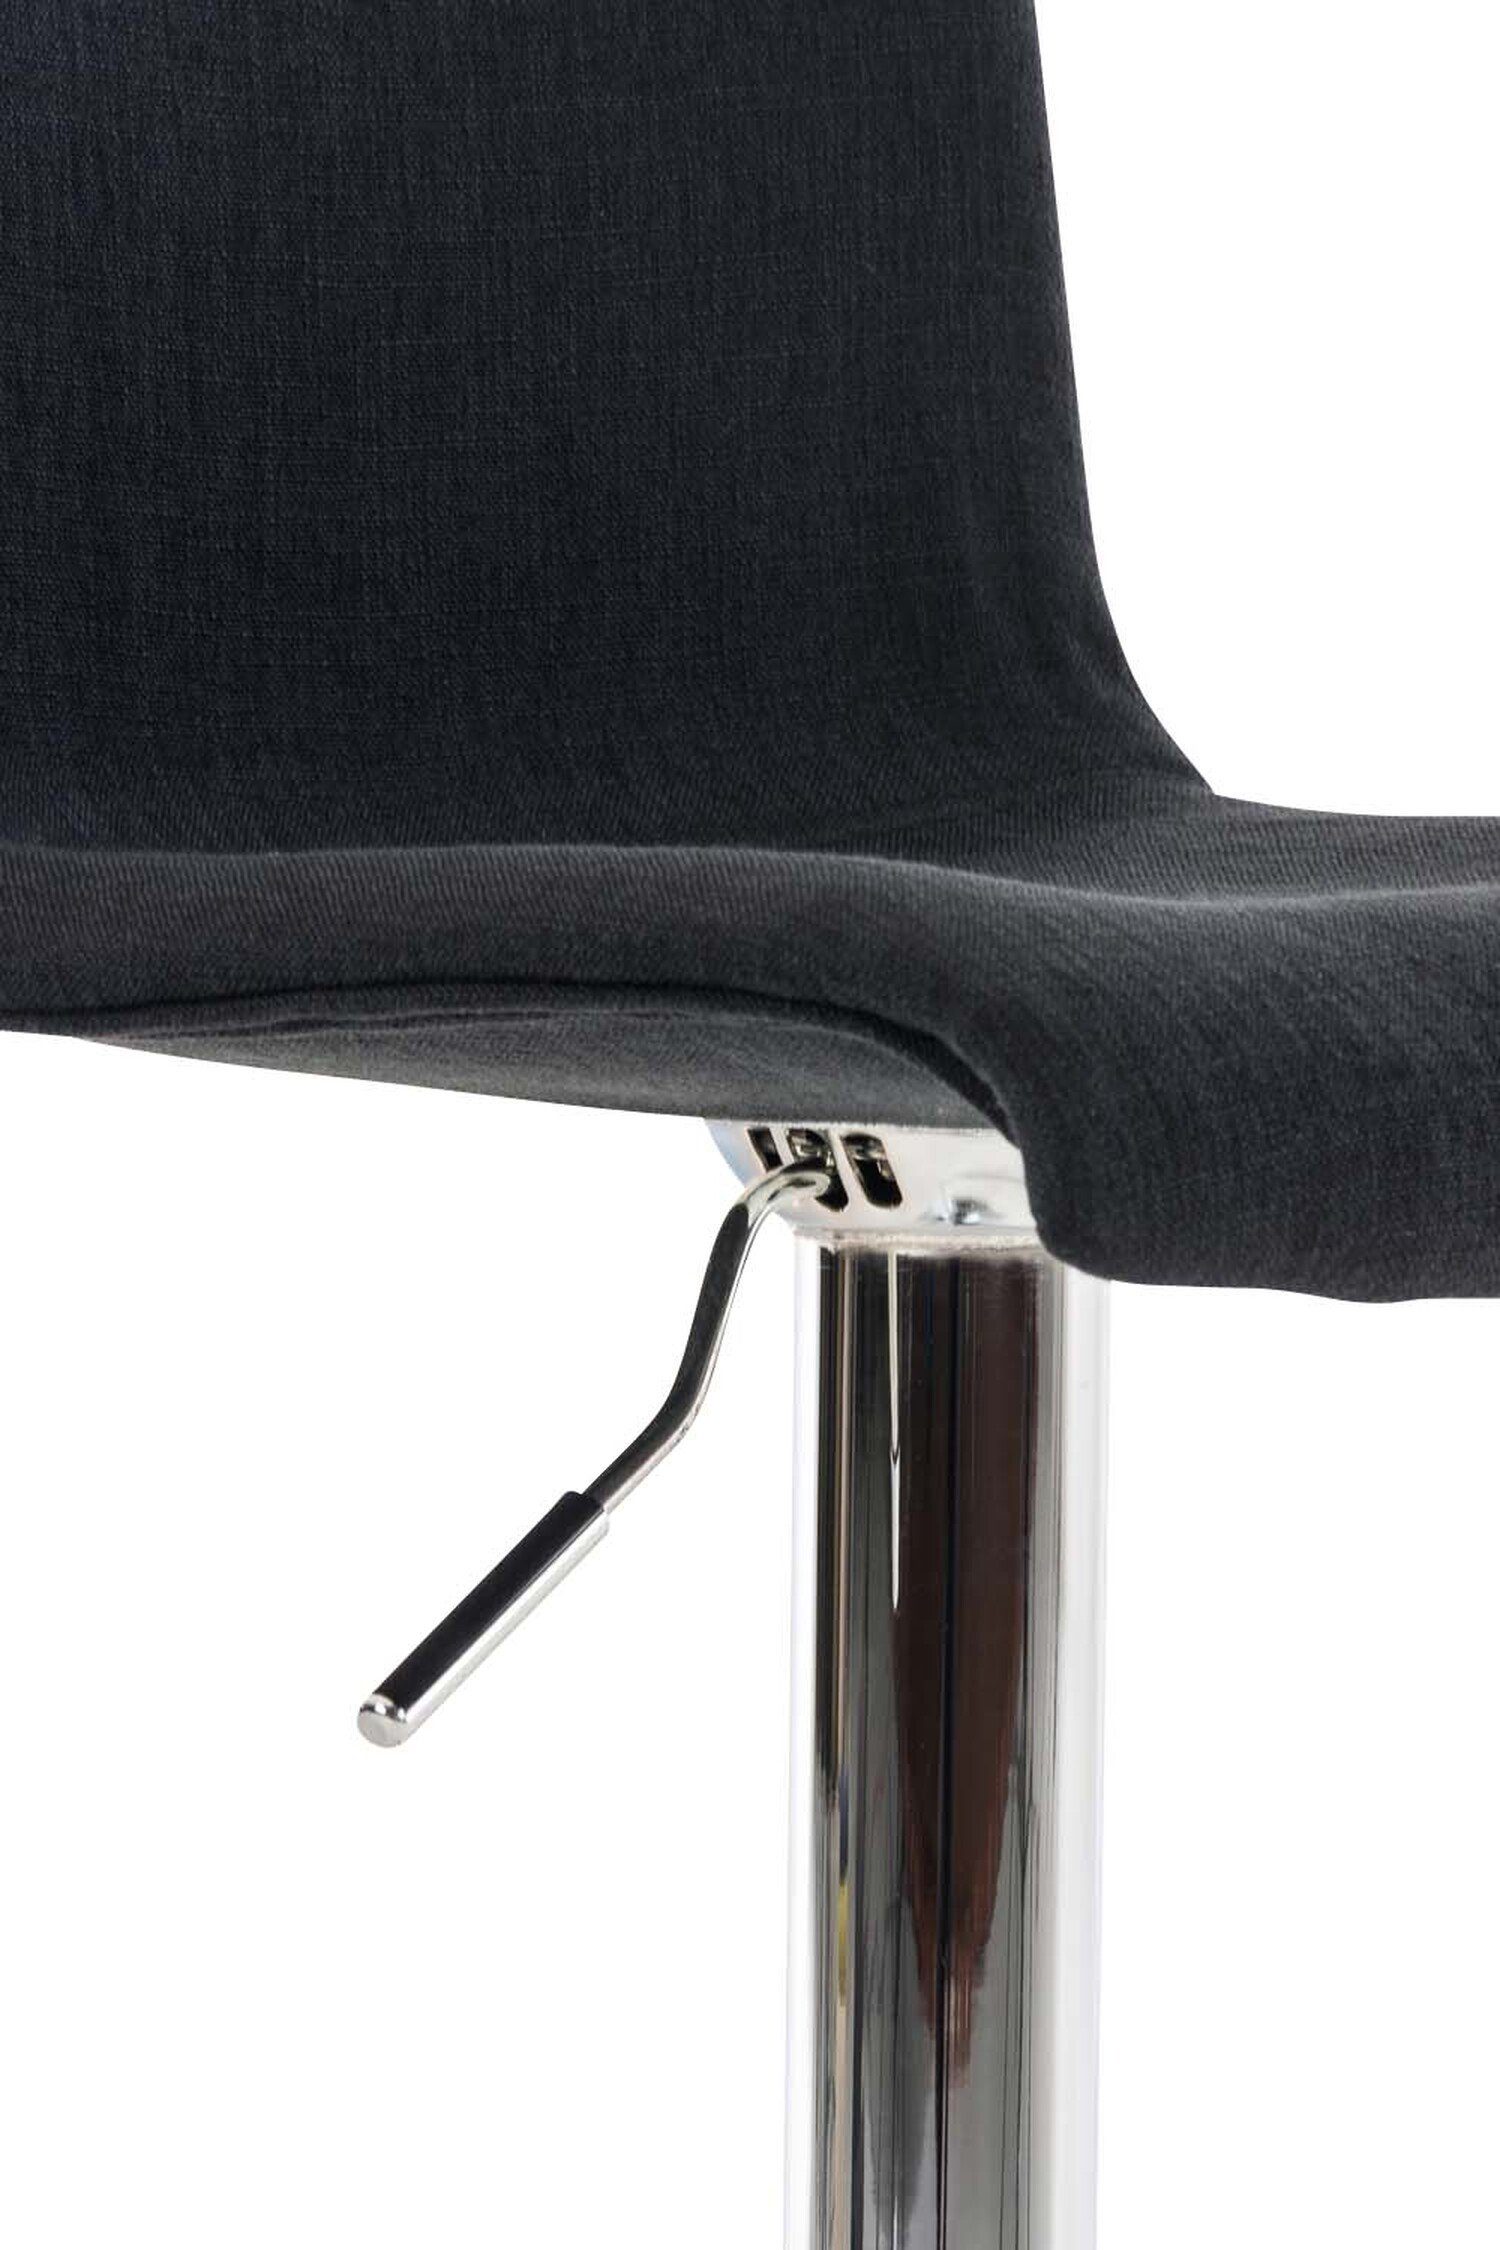 Gestell - (mit - & Hoover Sitzfläche: Barhocker Theke Küche Hocker für - Fußstütze Chrom Schwarz Metall Stoff Tresenhocker), TPFLiving